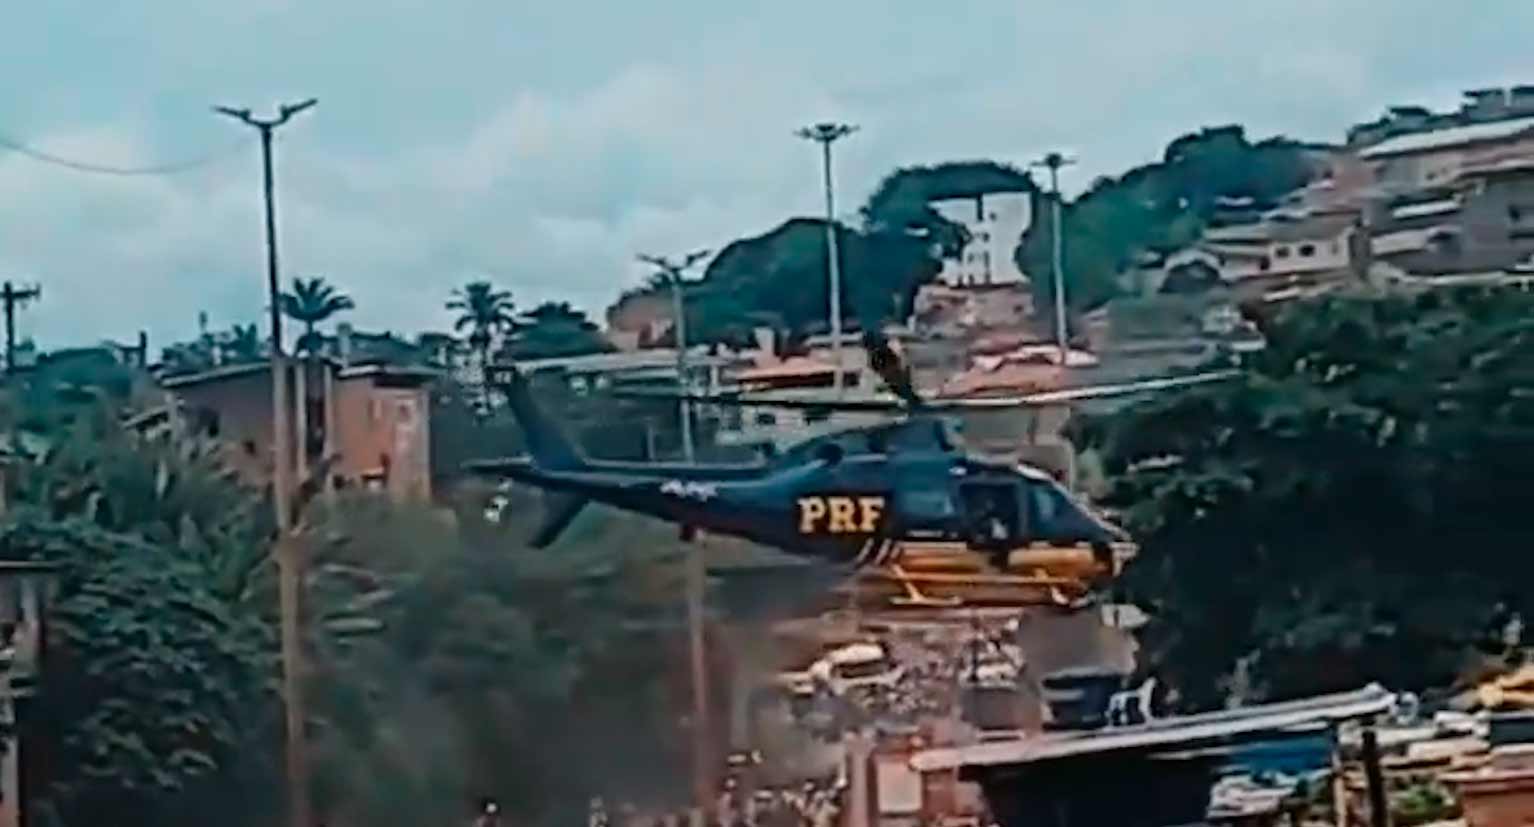 Vidéo montre le moment de l'accident d'hélicoptère de la Police Routière Fédérale au Brésil. Photo et vidéo : Twitter @GNC__CAPS__